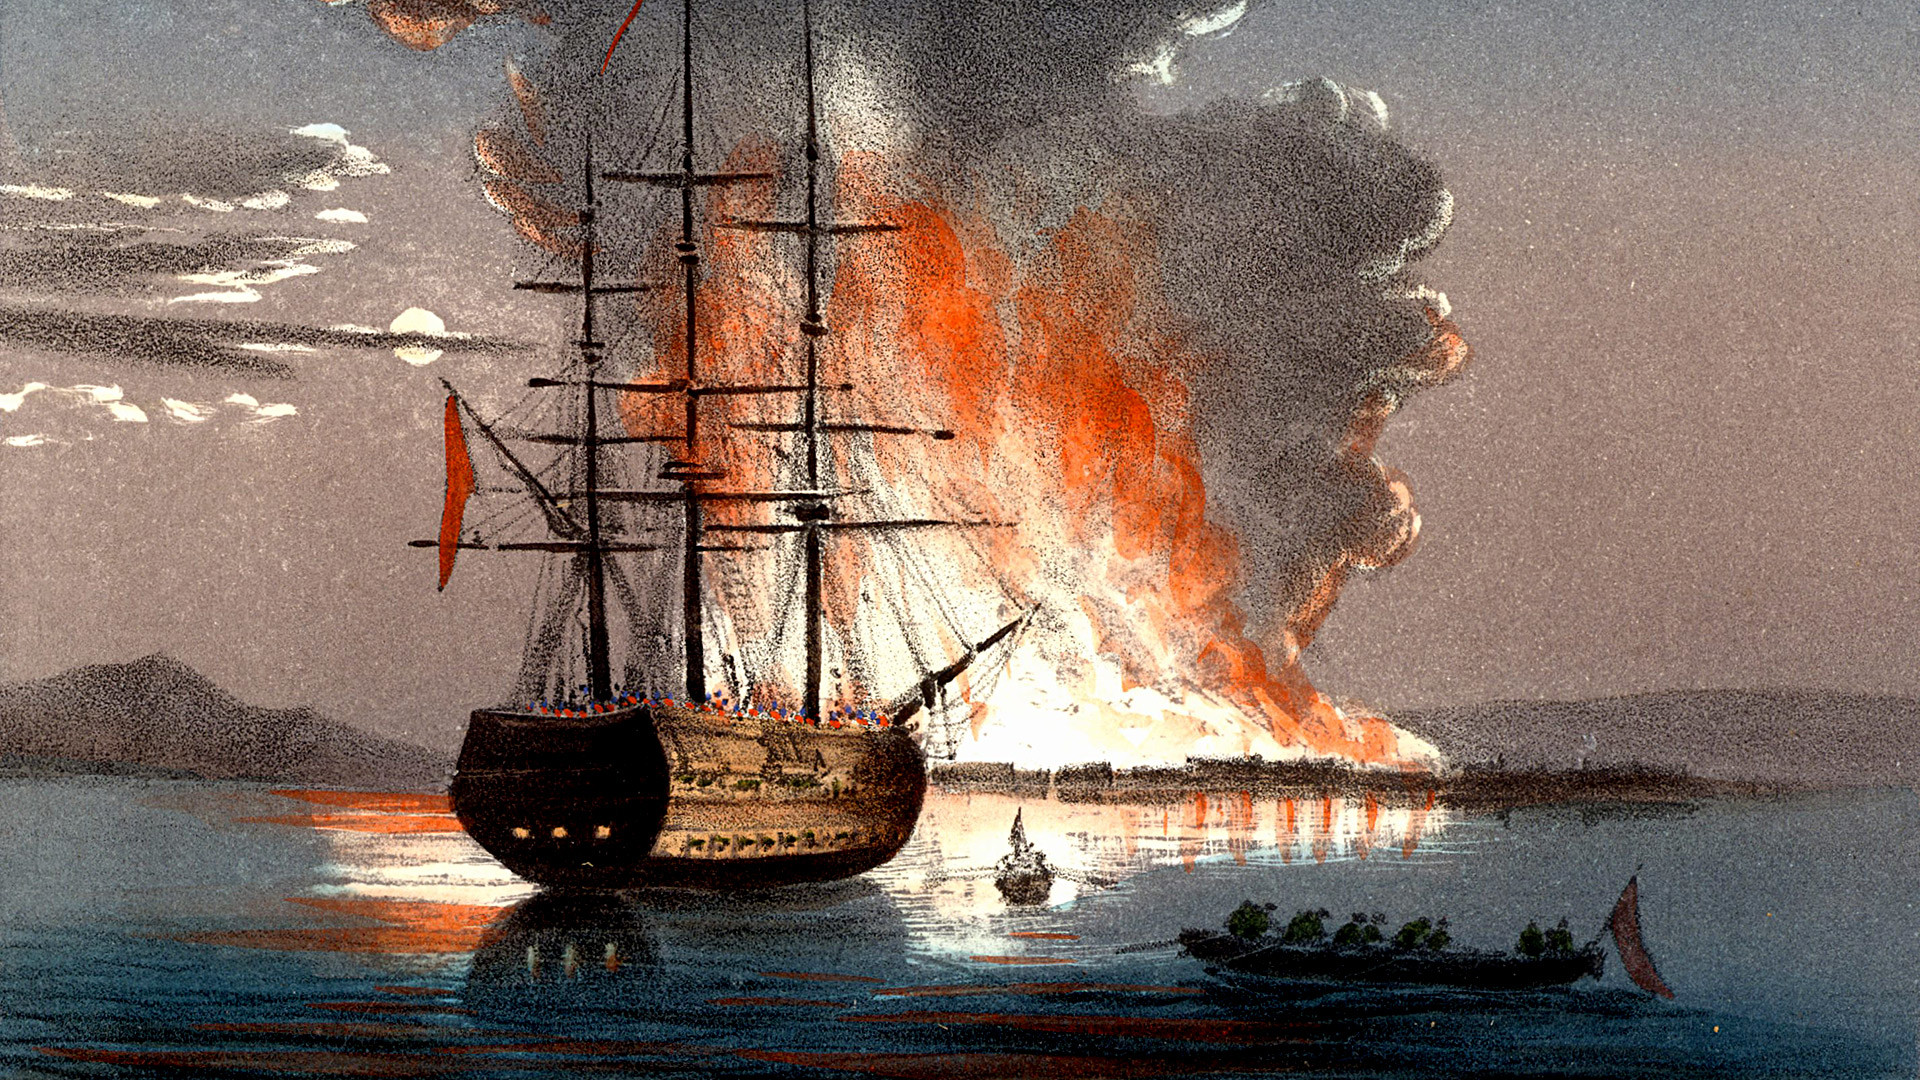 Požar pri morski ožini Čanakale, litografija, 1857.